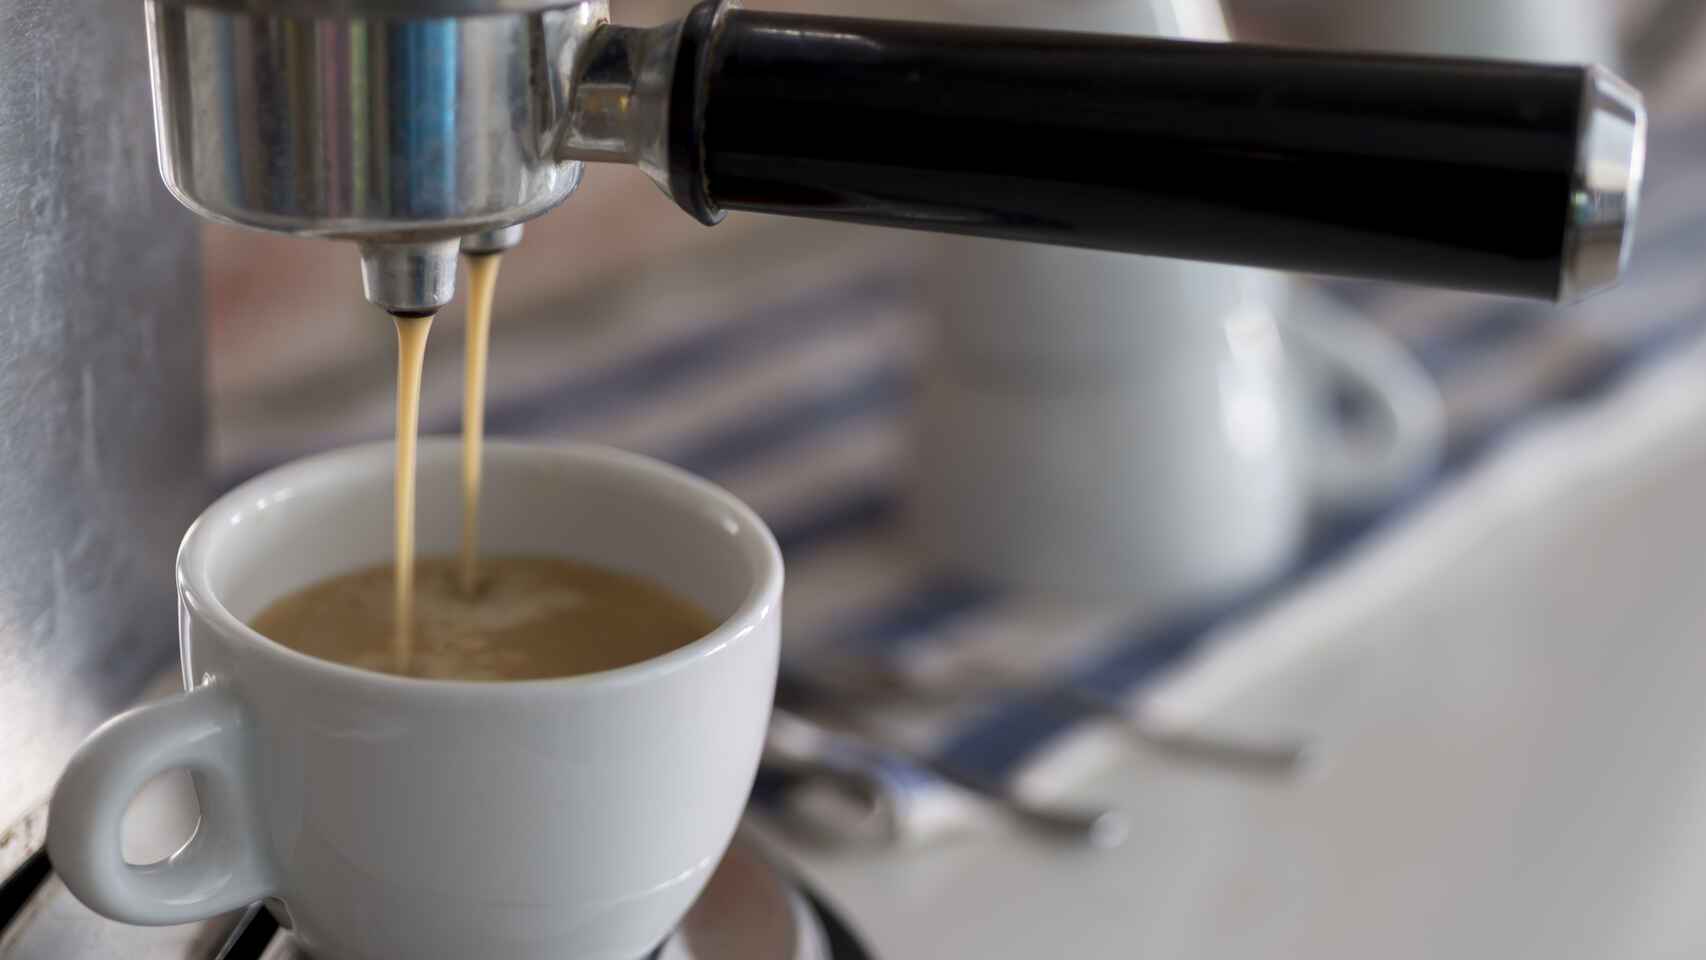 Una cafetera eléctrica echando el café en una taza.